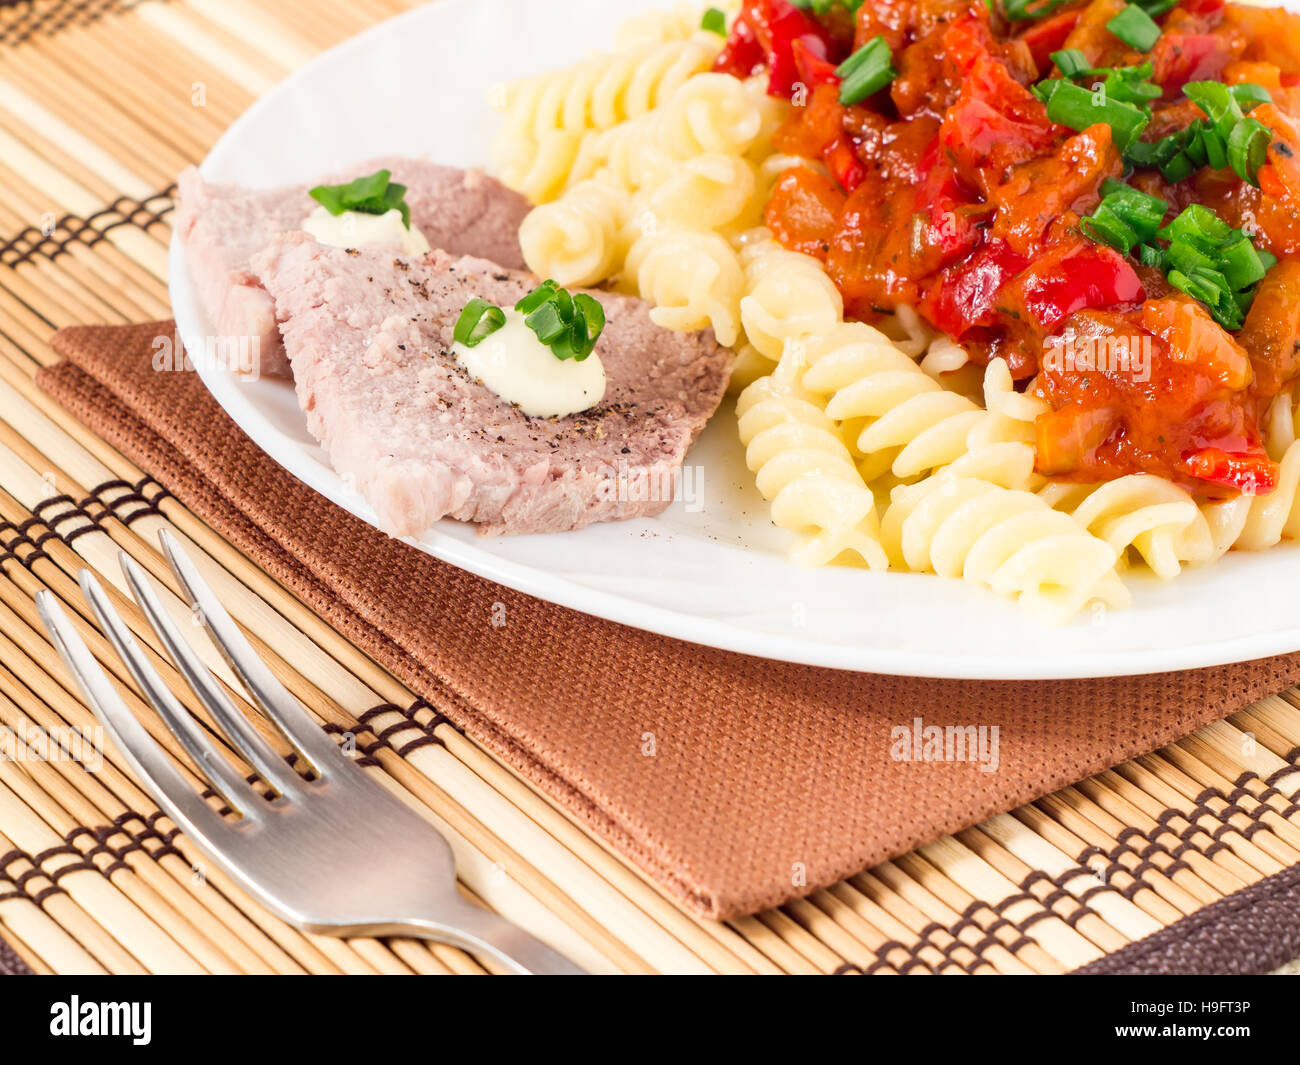 Italienische Pasta mit Gemüse-Sauce und Scheiben von Fleisch mit Kräutern auf eine Platte Nahaufnahme mit geringer Tiefe des Fokus. Stockfoto